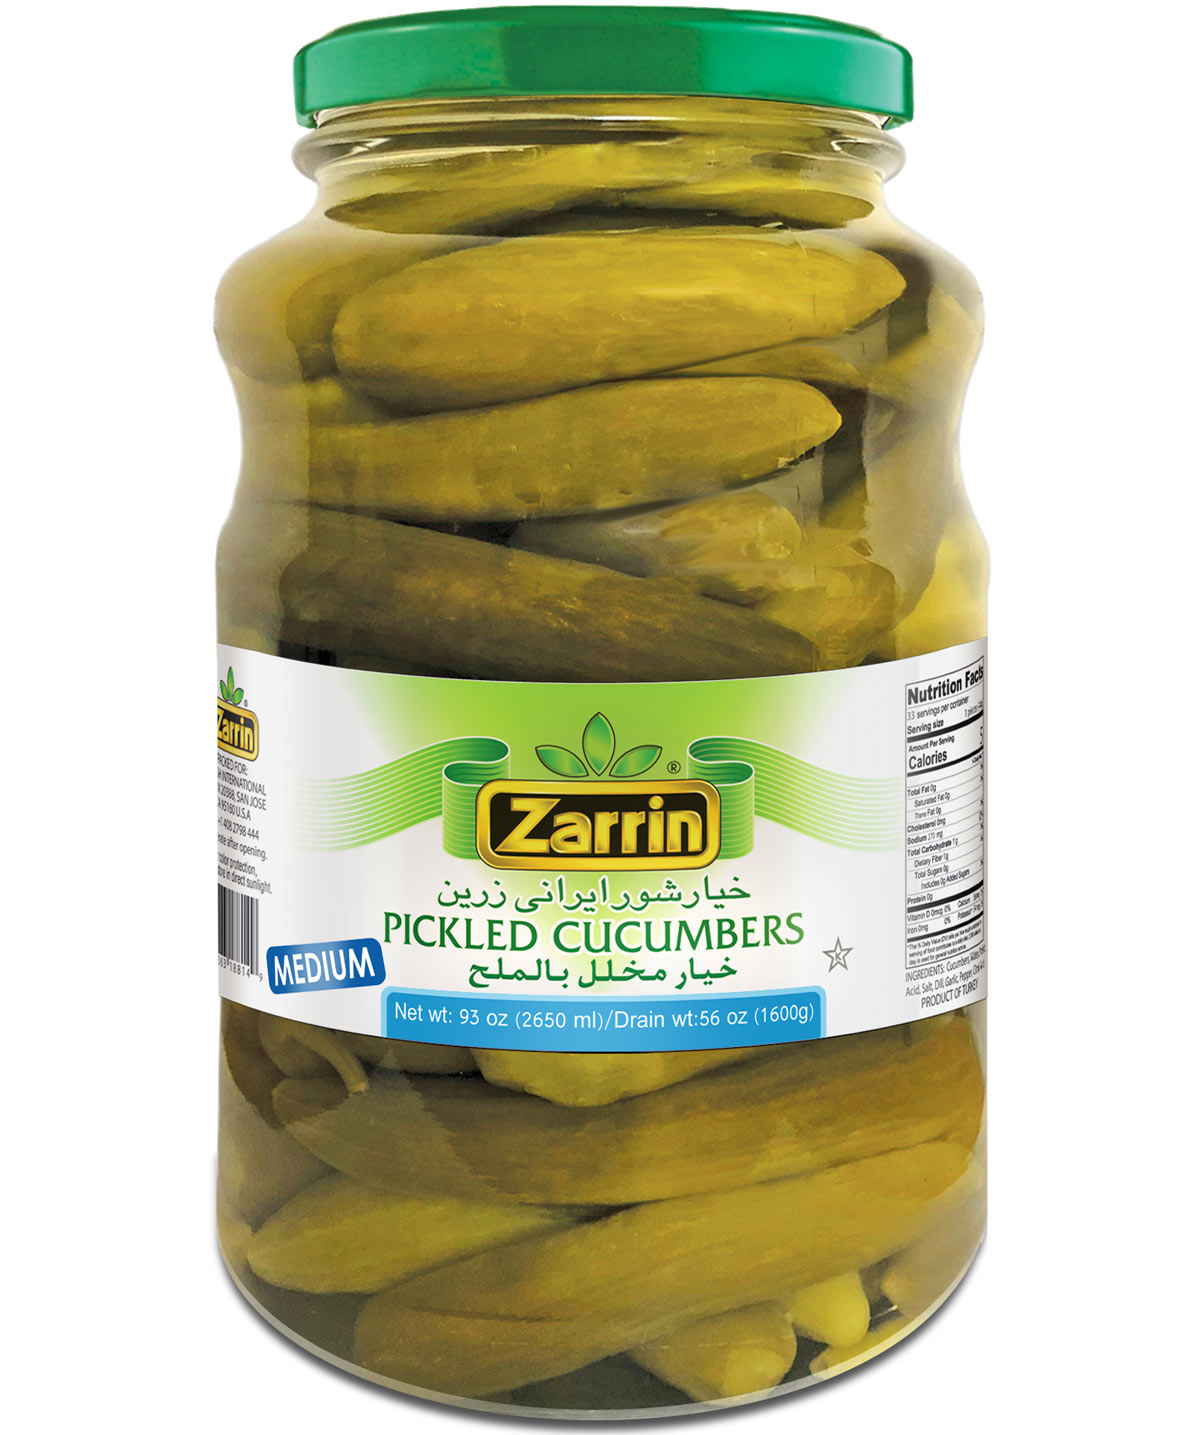 Zarrin pickled medium cucumbers in glass jar by Zarrin.